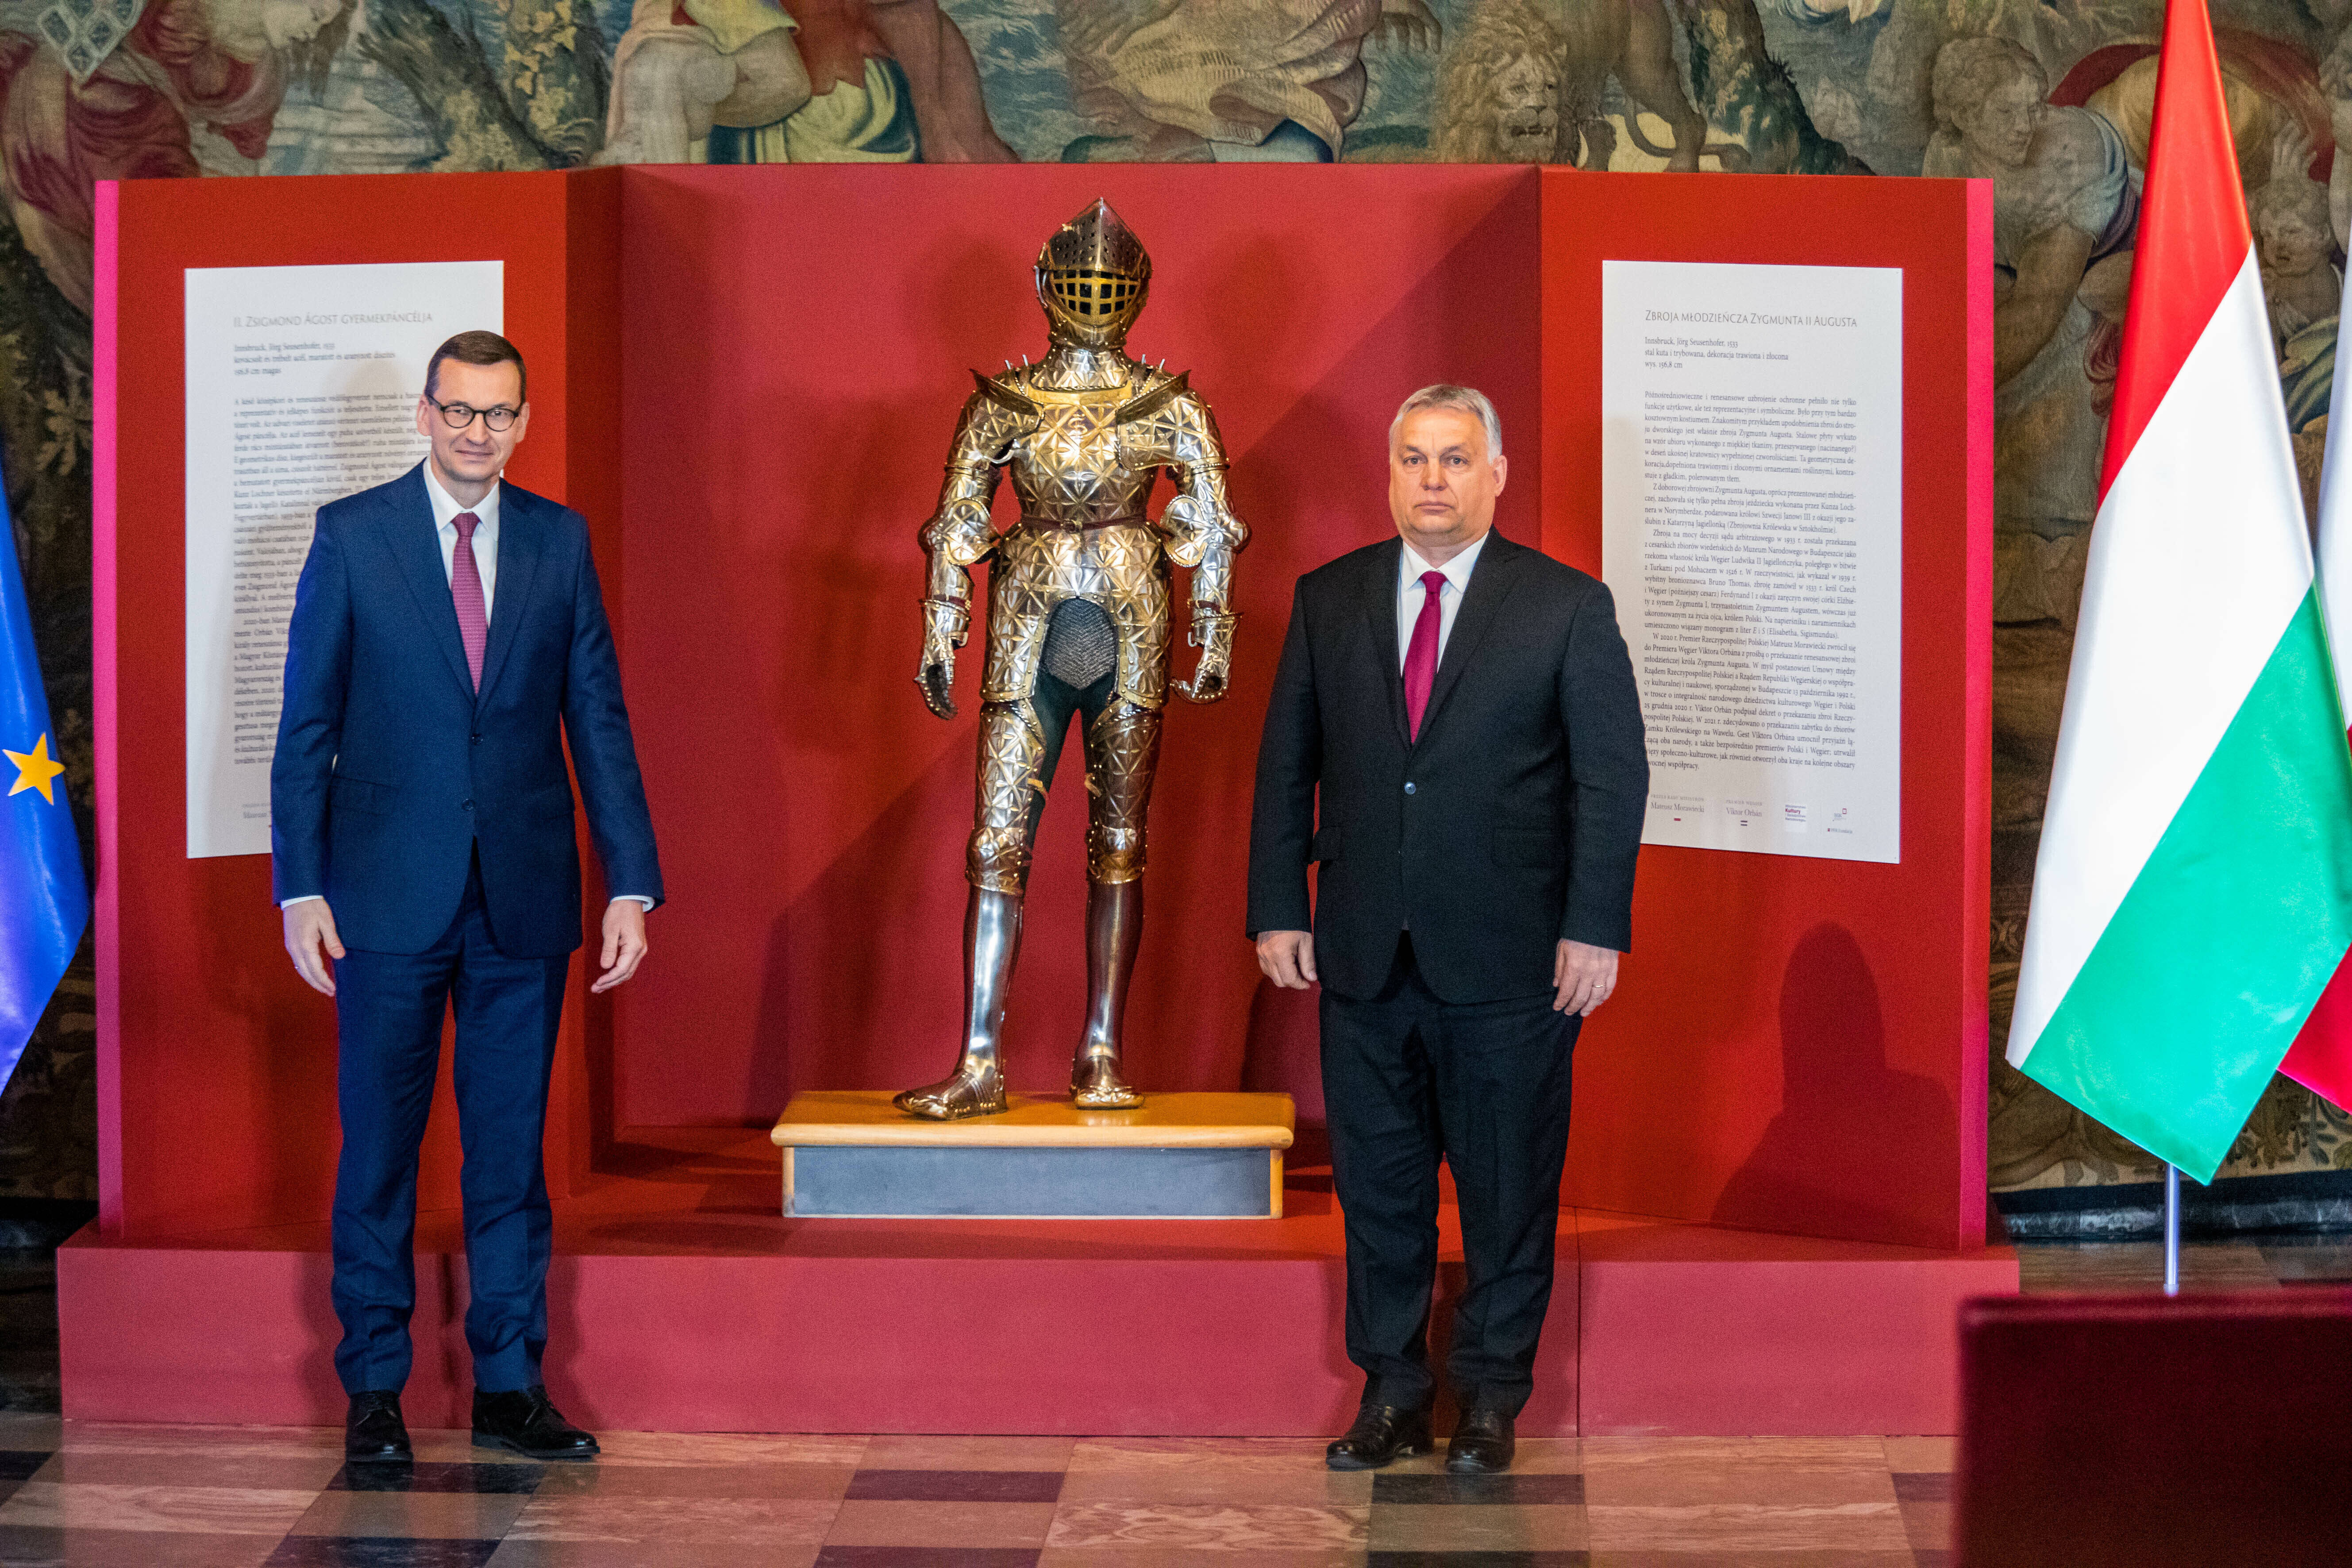 Sie bekämpfen die Medienfreiheit in ihren Ländern: Polens Ministerpräsident Mateusz Morawiecki (l.) mit seinem ungarischen Amtskollegen Victor Orban am 17. Februar 2021 in Krakau